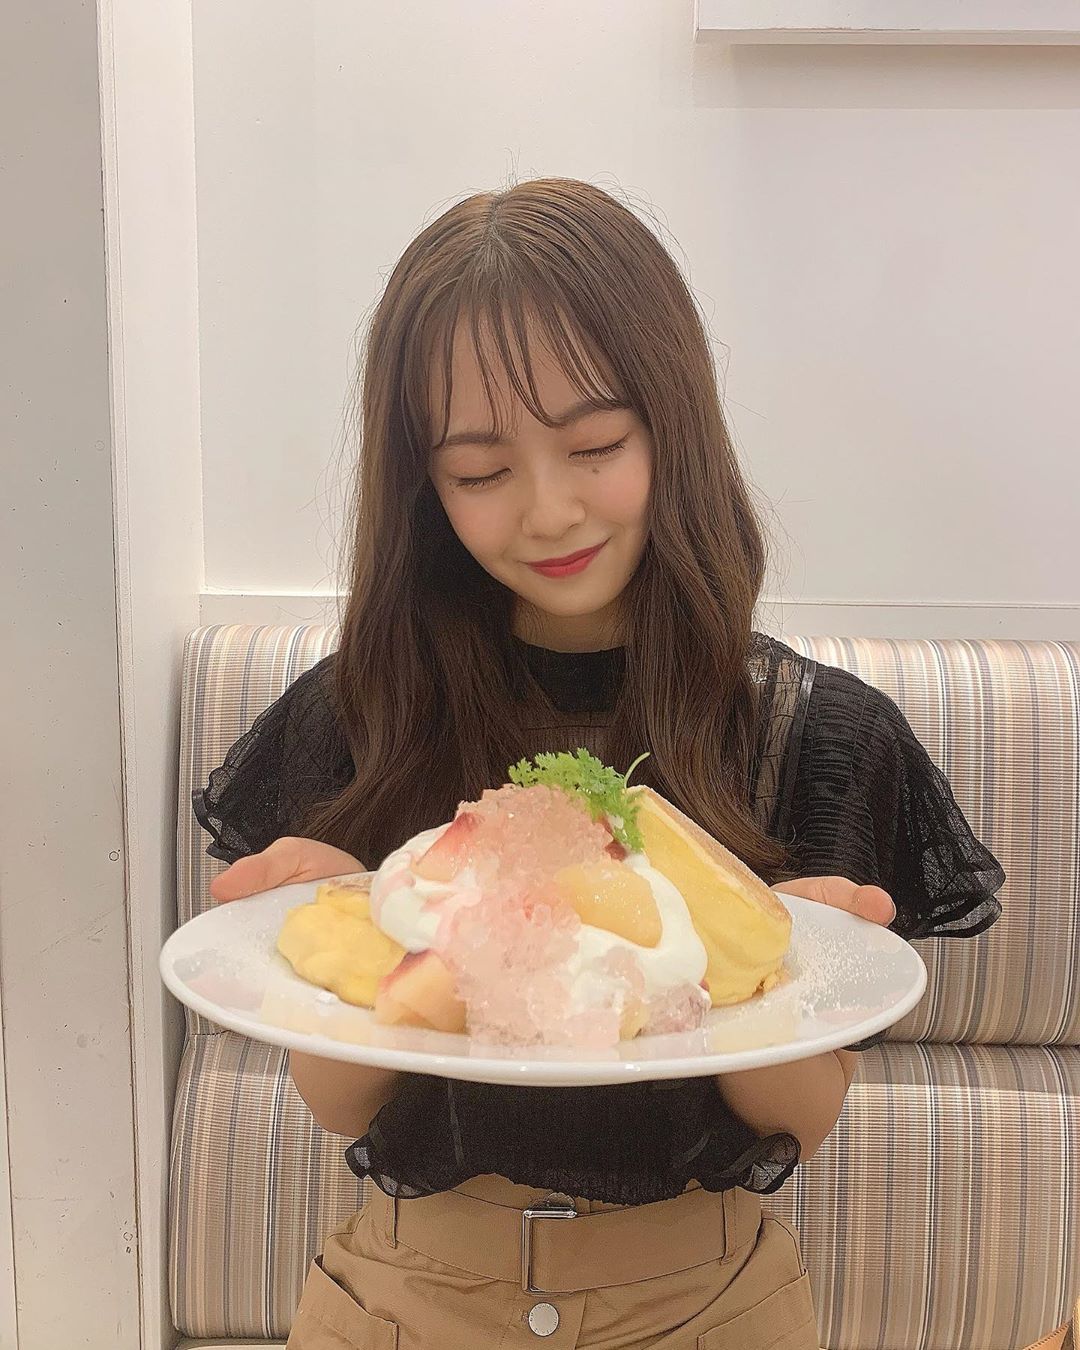 湯本亜美 ㅤㅤㅤ 幸せな顔してる 幸せのパンケーキ Moe Zine